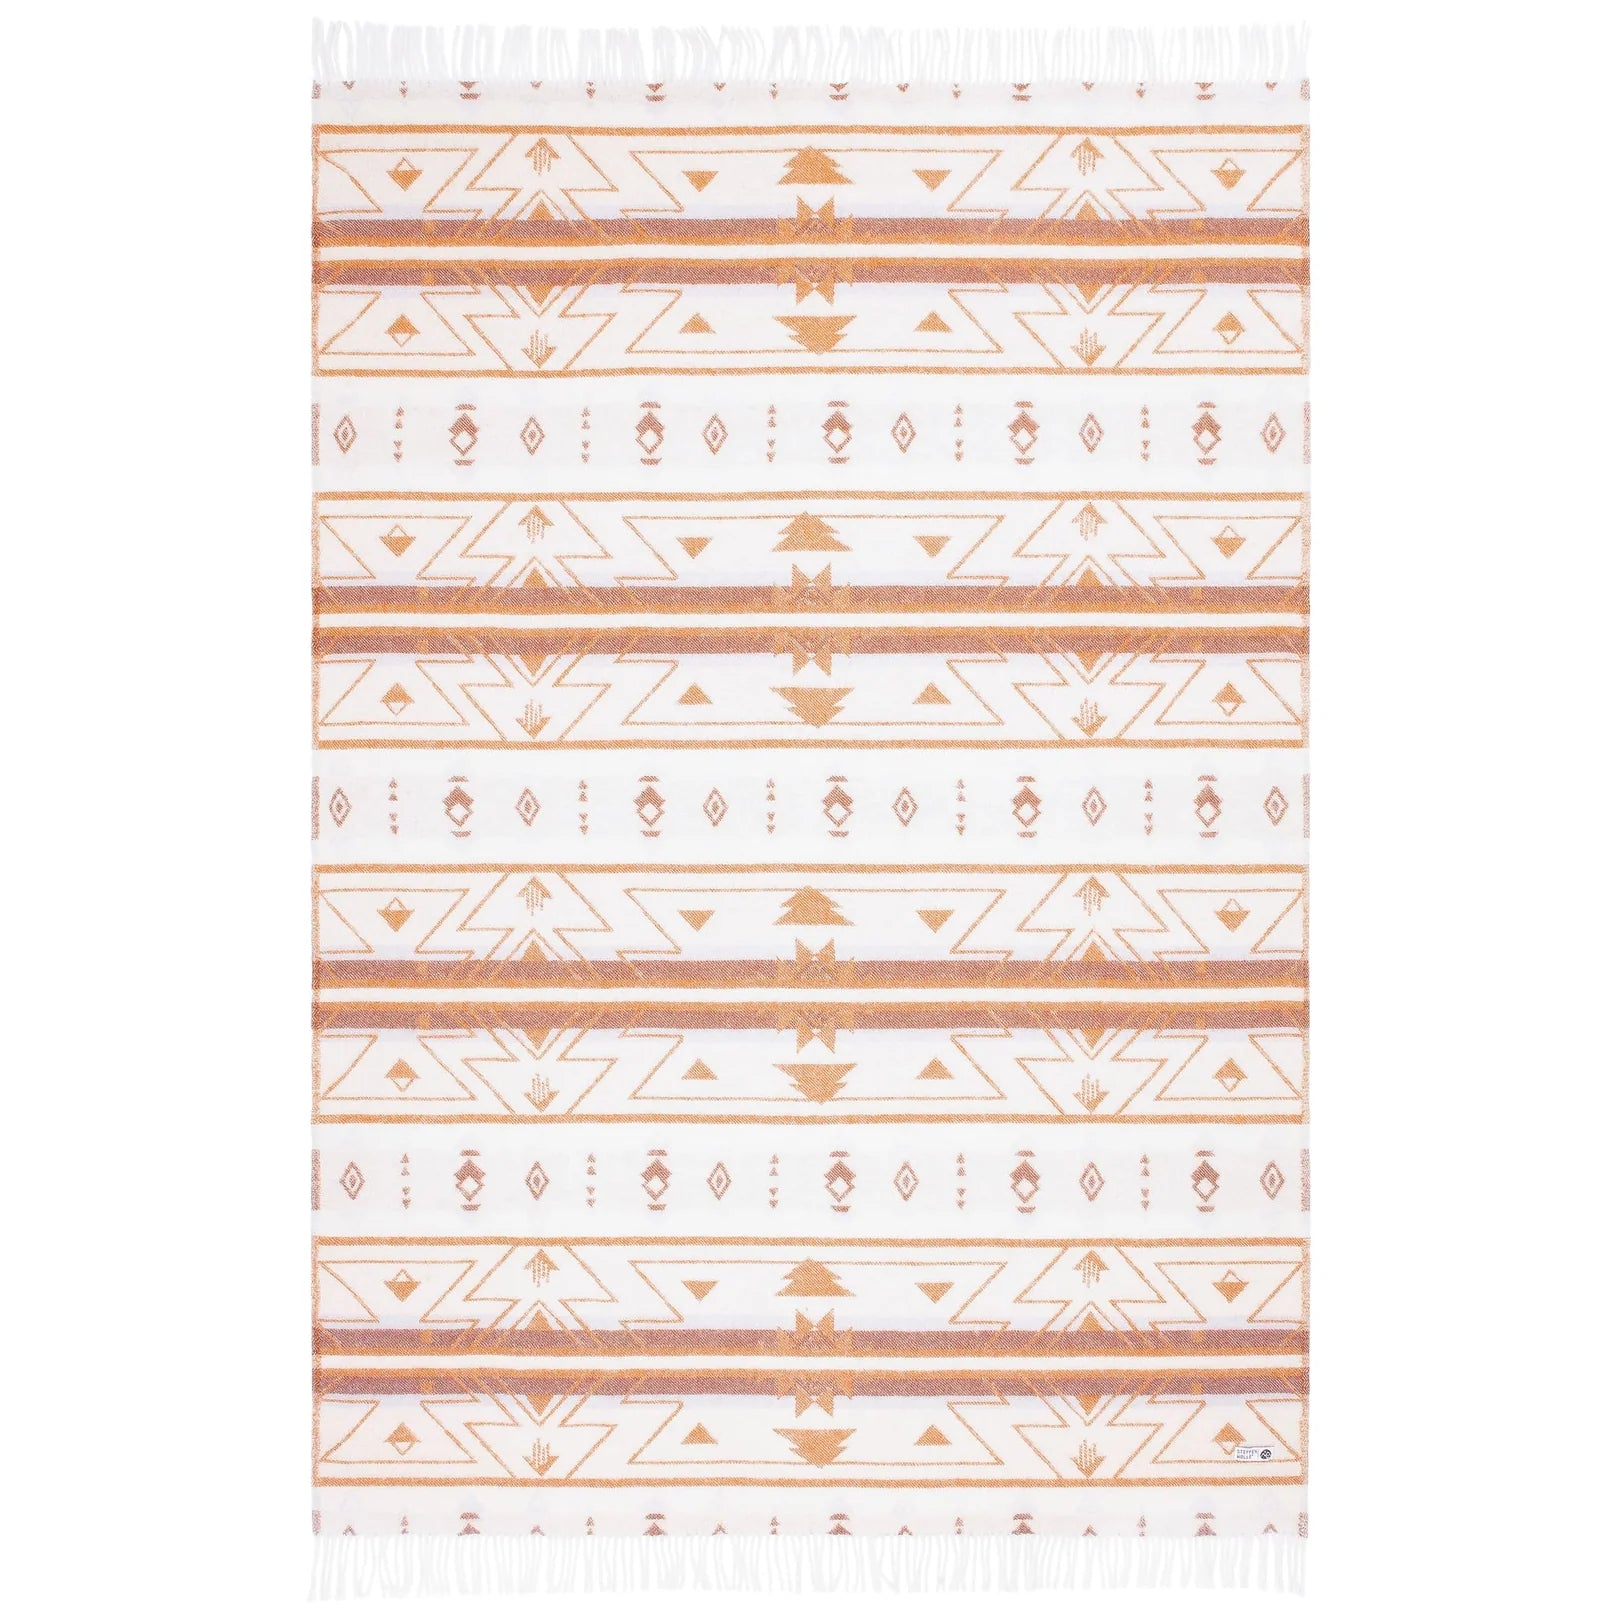 SONORA | Braun-weiße Kuscheldecke mit zickzack Muster & Fransen | 130x200cm